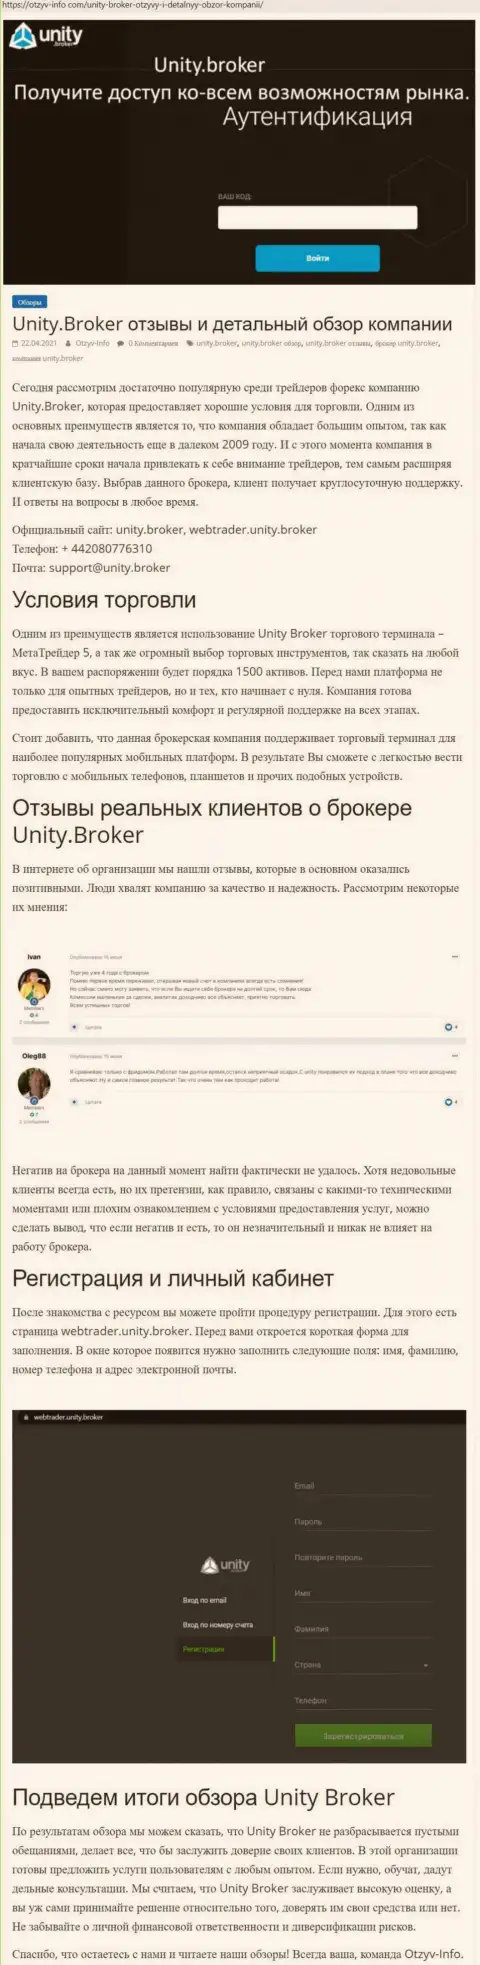 Обзор деятельности ФОРЕКС-дилинговой компании Unity Broker на сайте otzyv info com